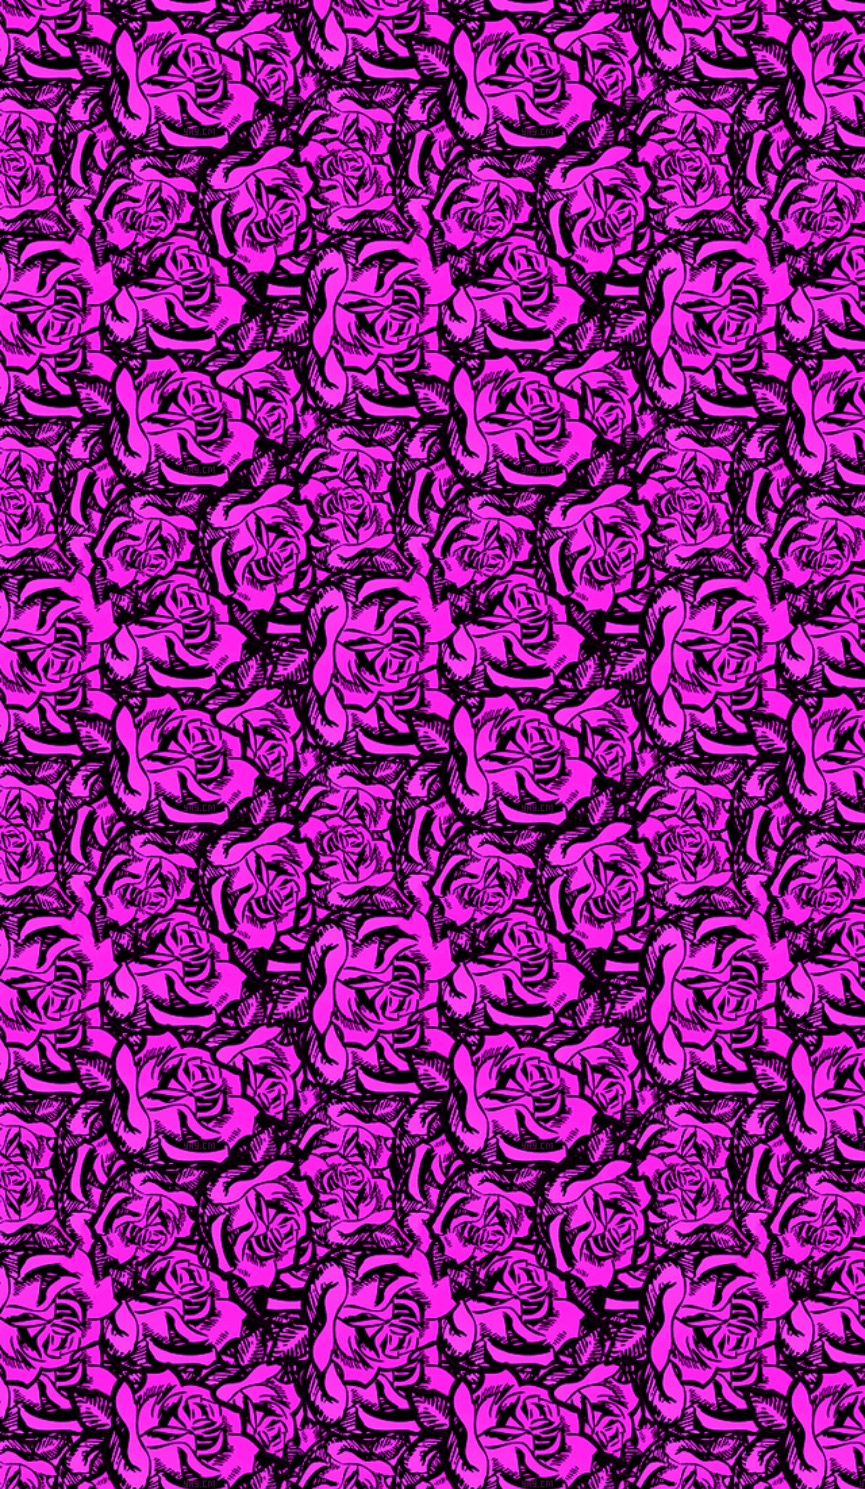 Berwarna Merah Muda, Merah Muda And Black Floral Wallpaper - Motif - HD Wallpaper 